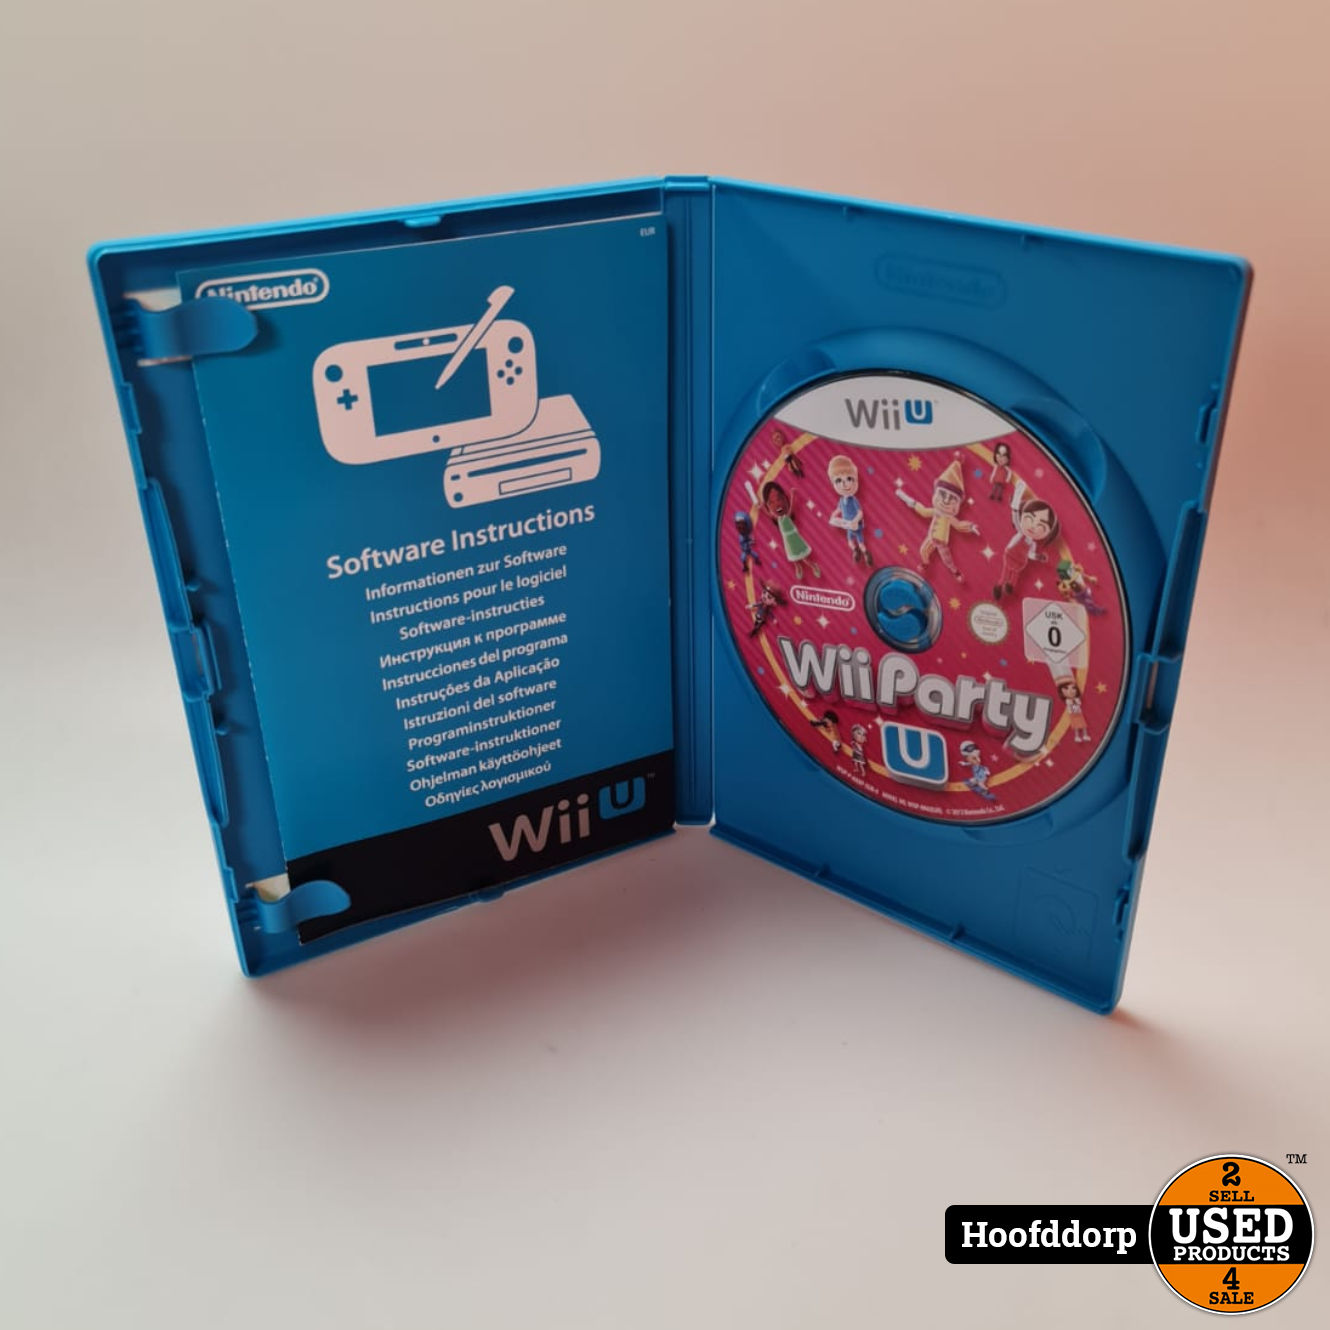 Zeep Compatibel met Site lijn Nintendo Wii U Game: Wii Party U - Used Products Hoofddorp